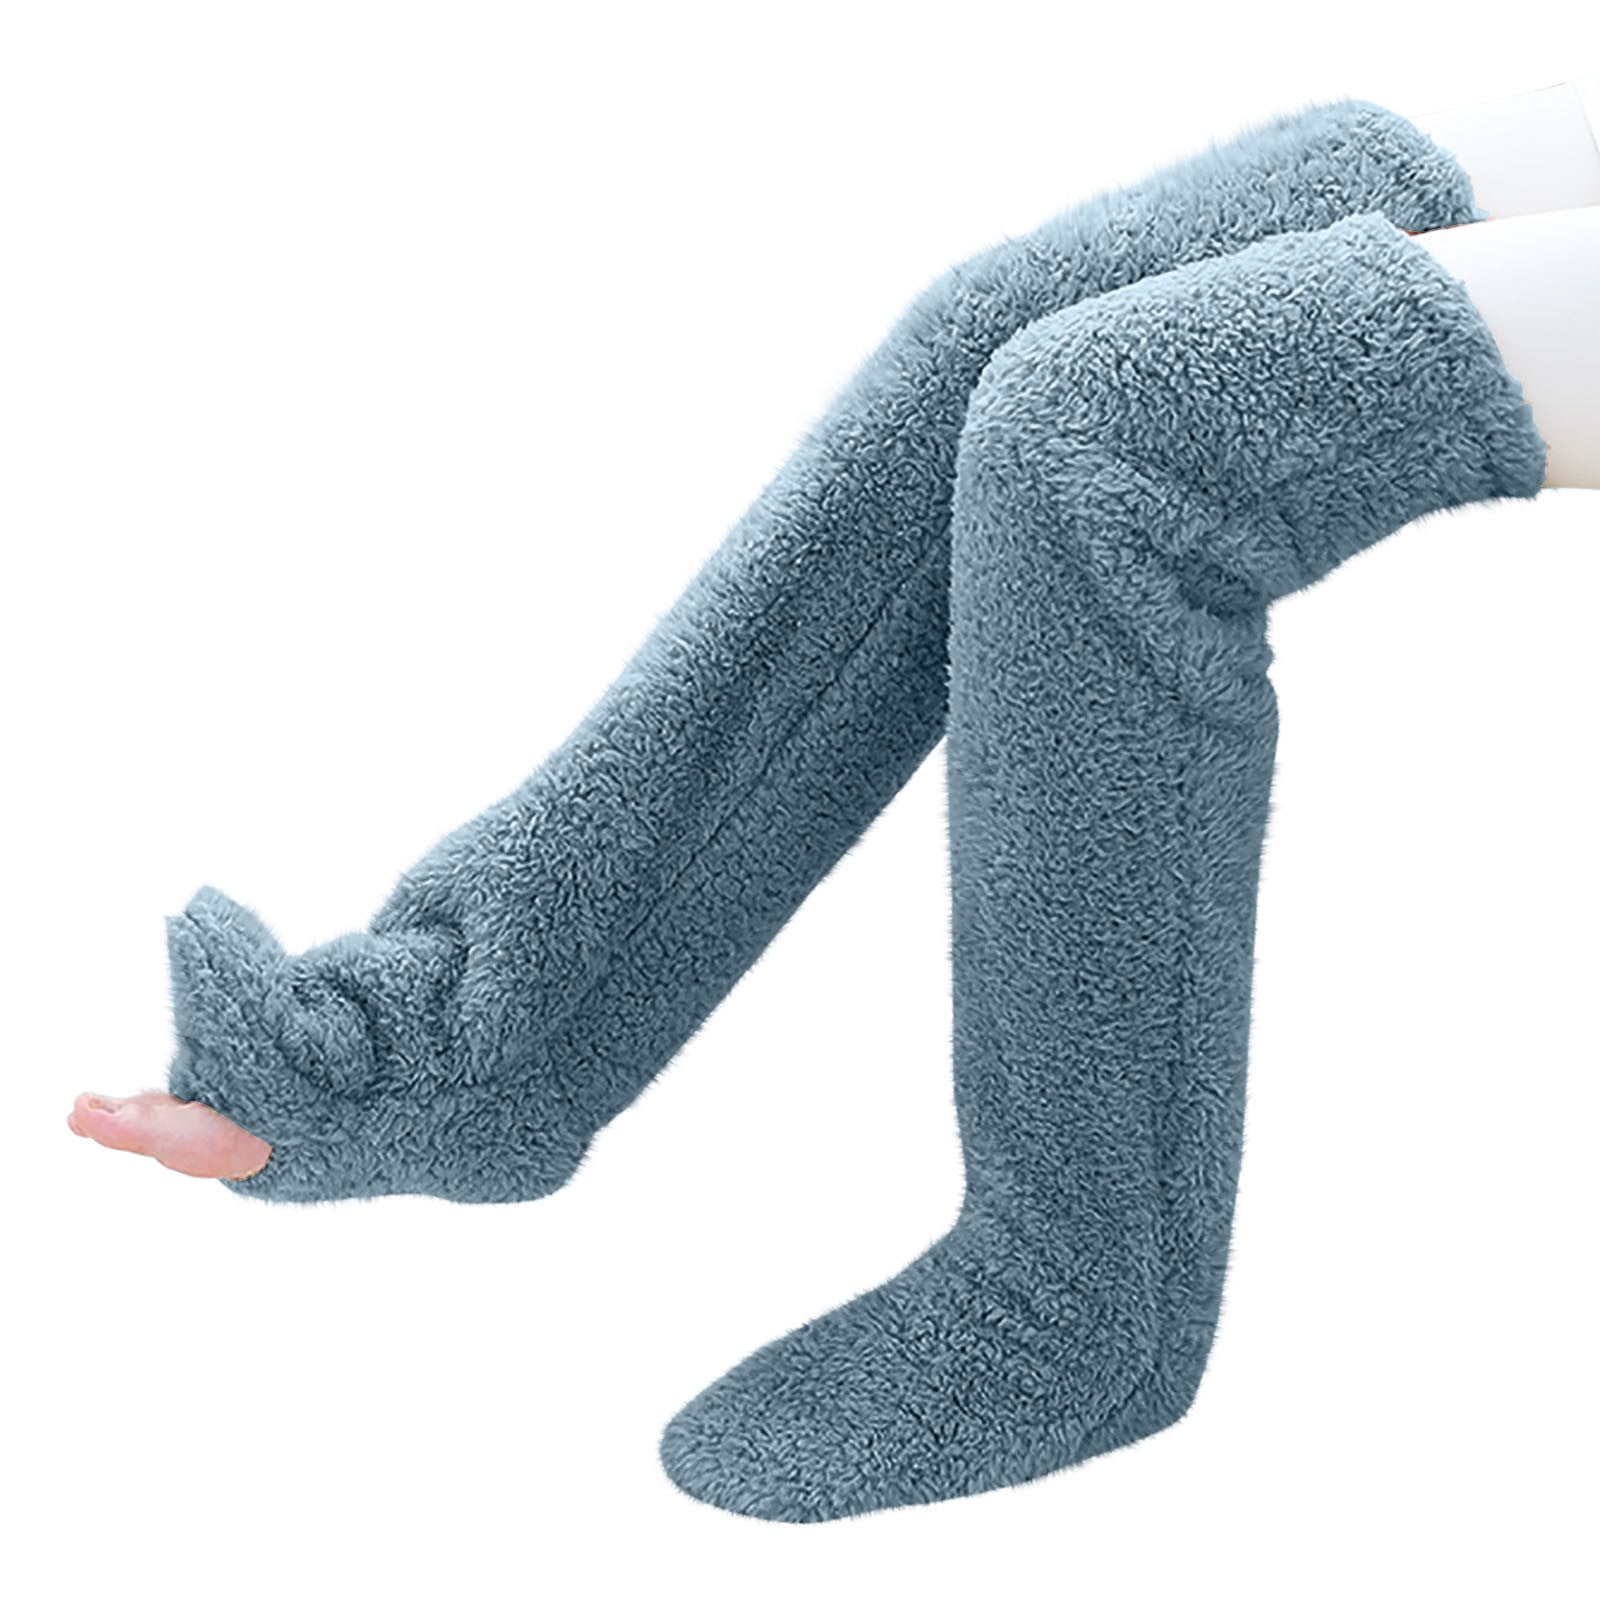 Snuggs Cozy Socks, Sock Slippers for Women and Men, Knee High Slipper ...